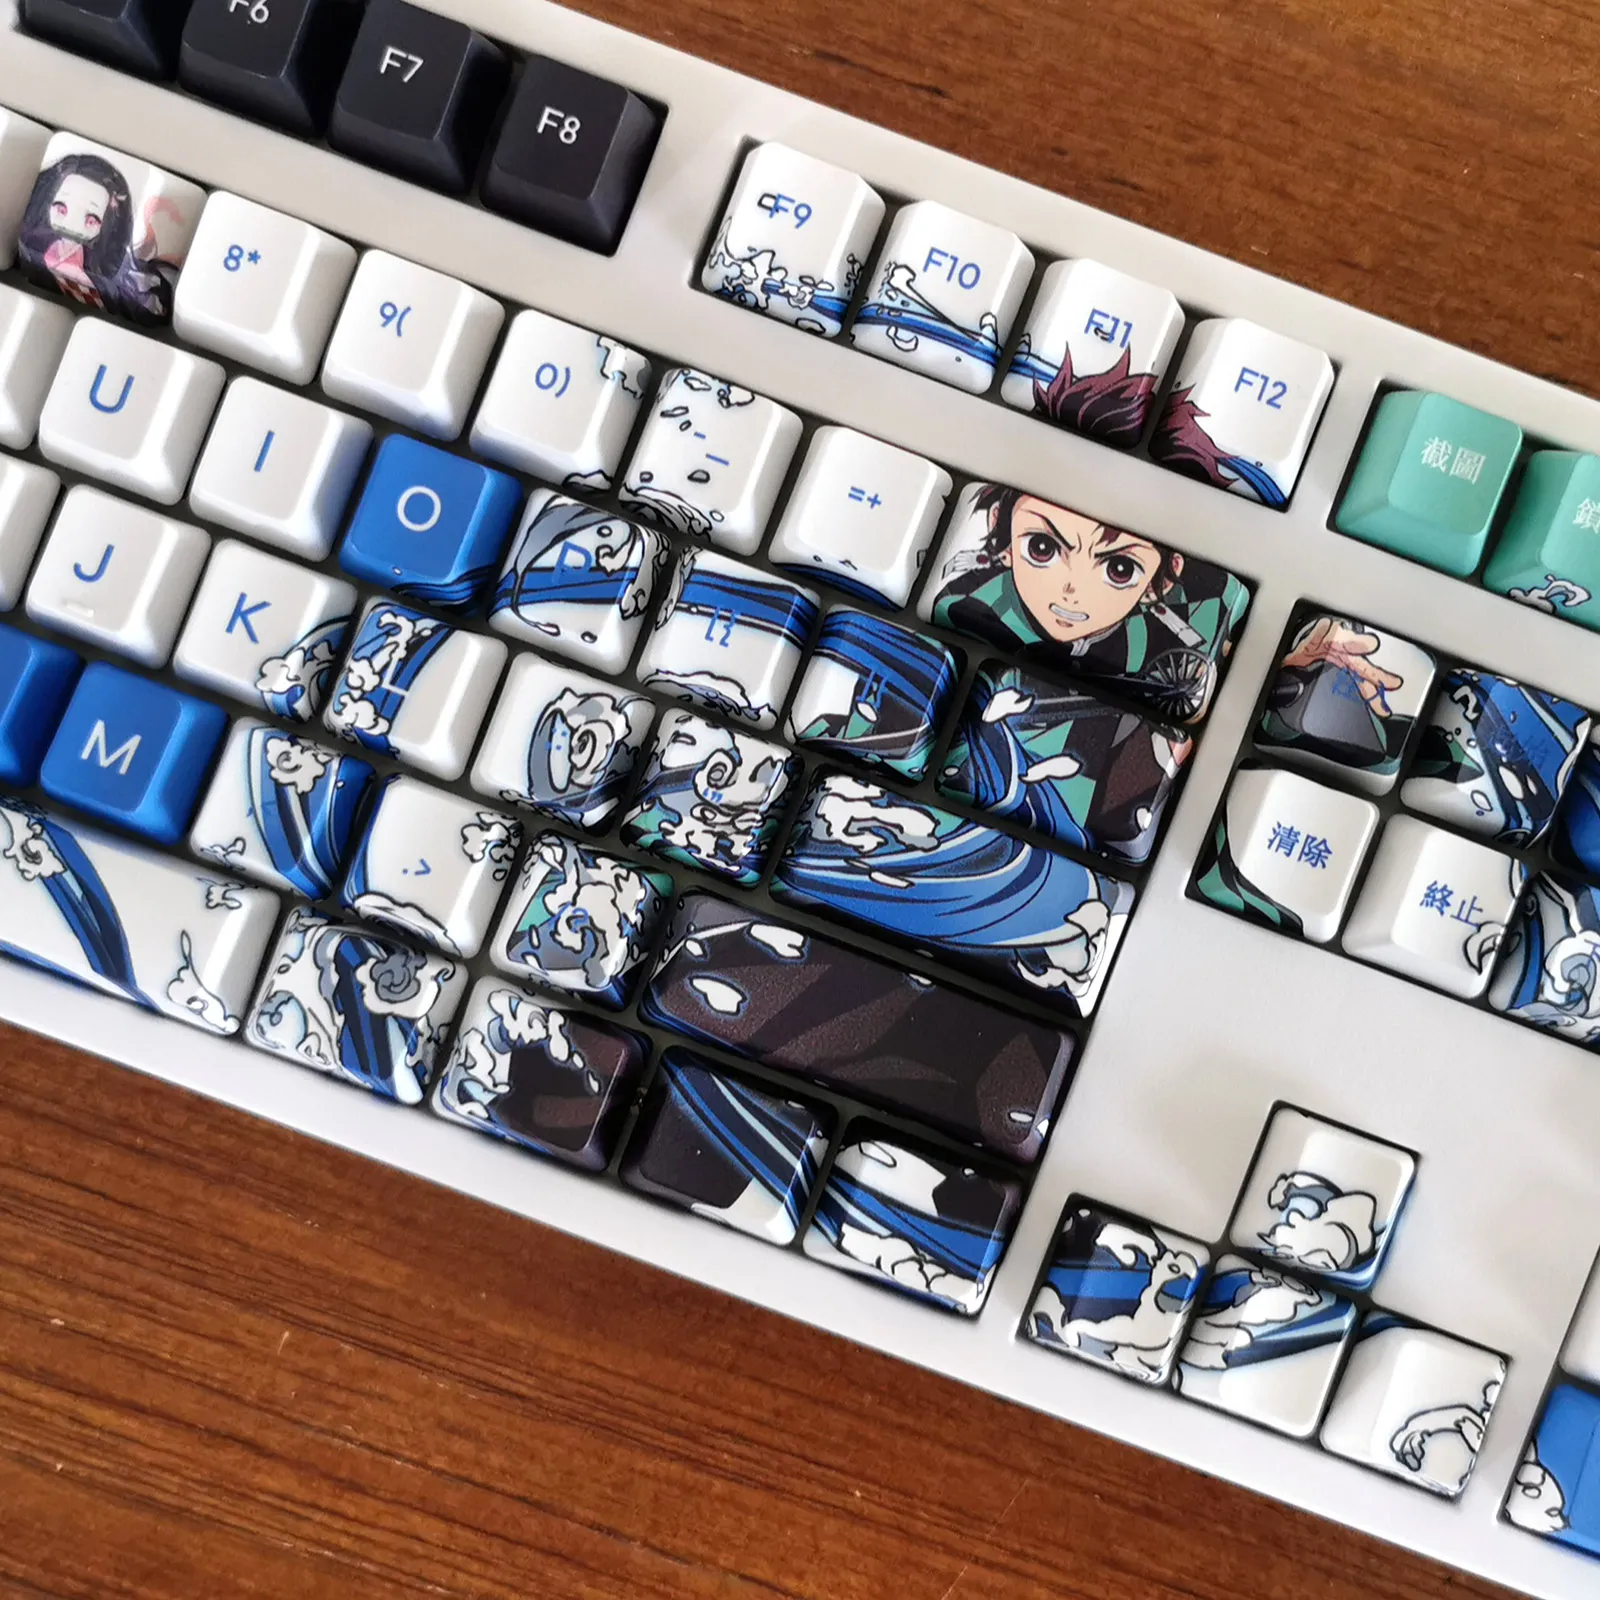 S5ca16df1e16f49b790e68d5bd35dc4e0S - Anime Keyboard